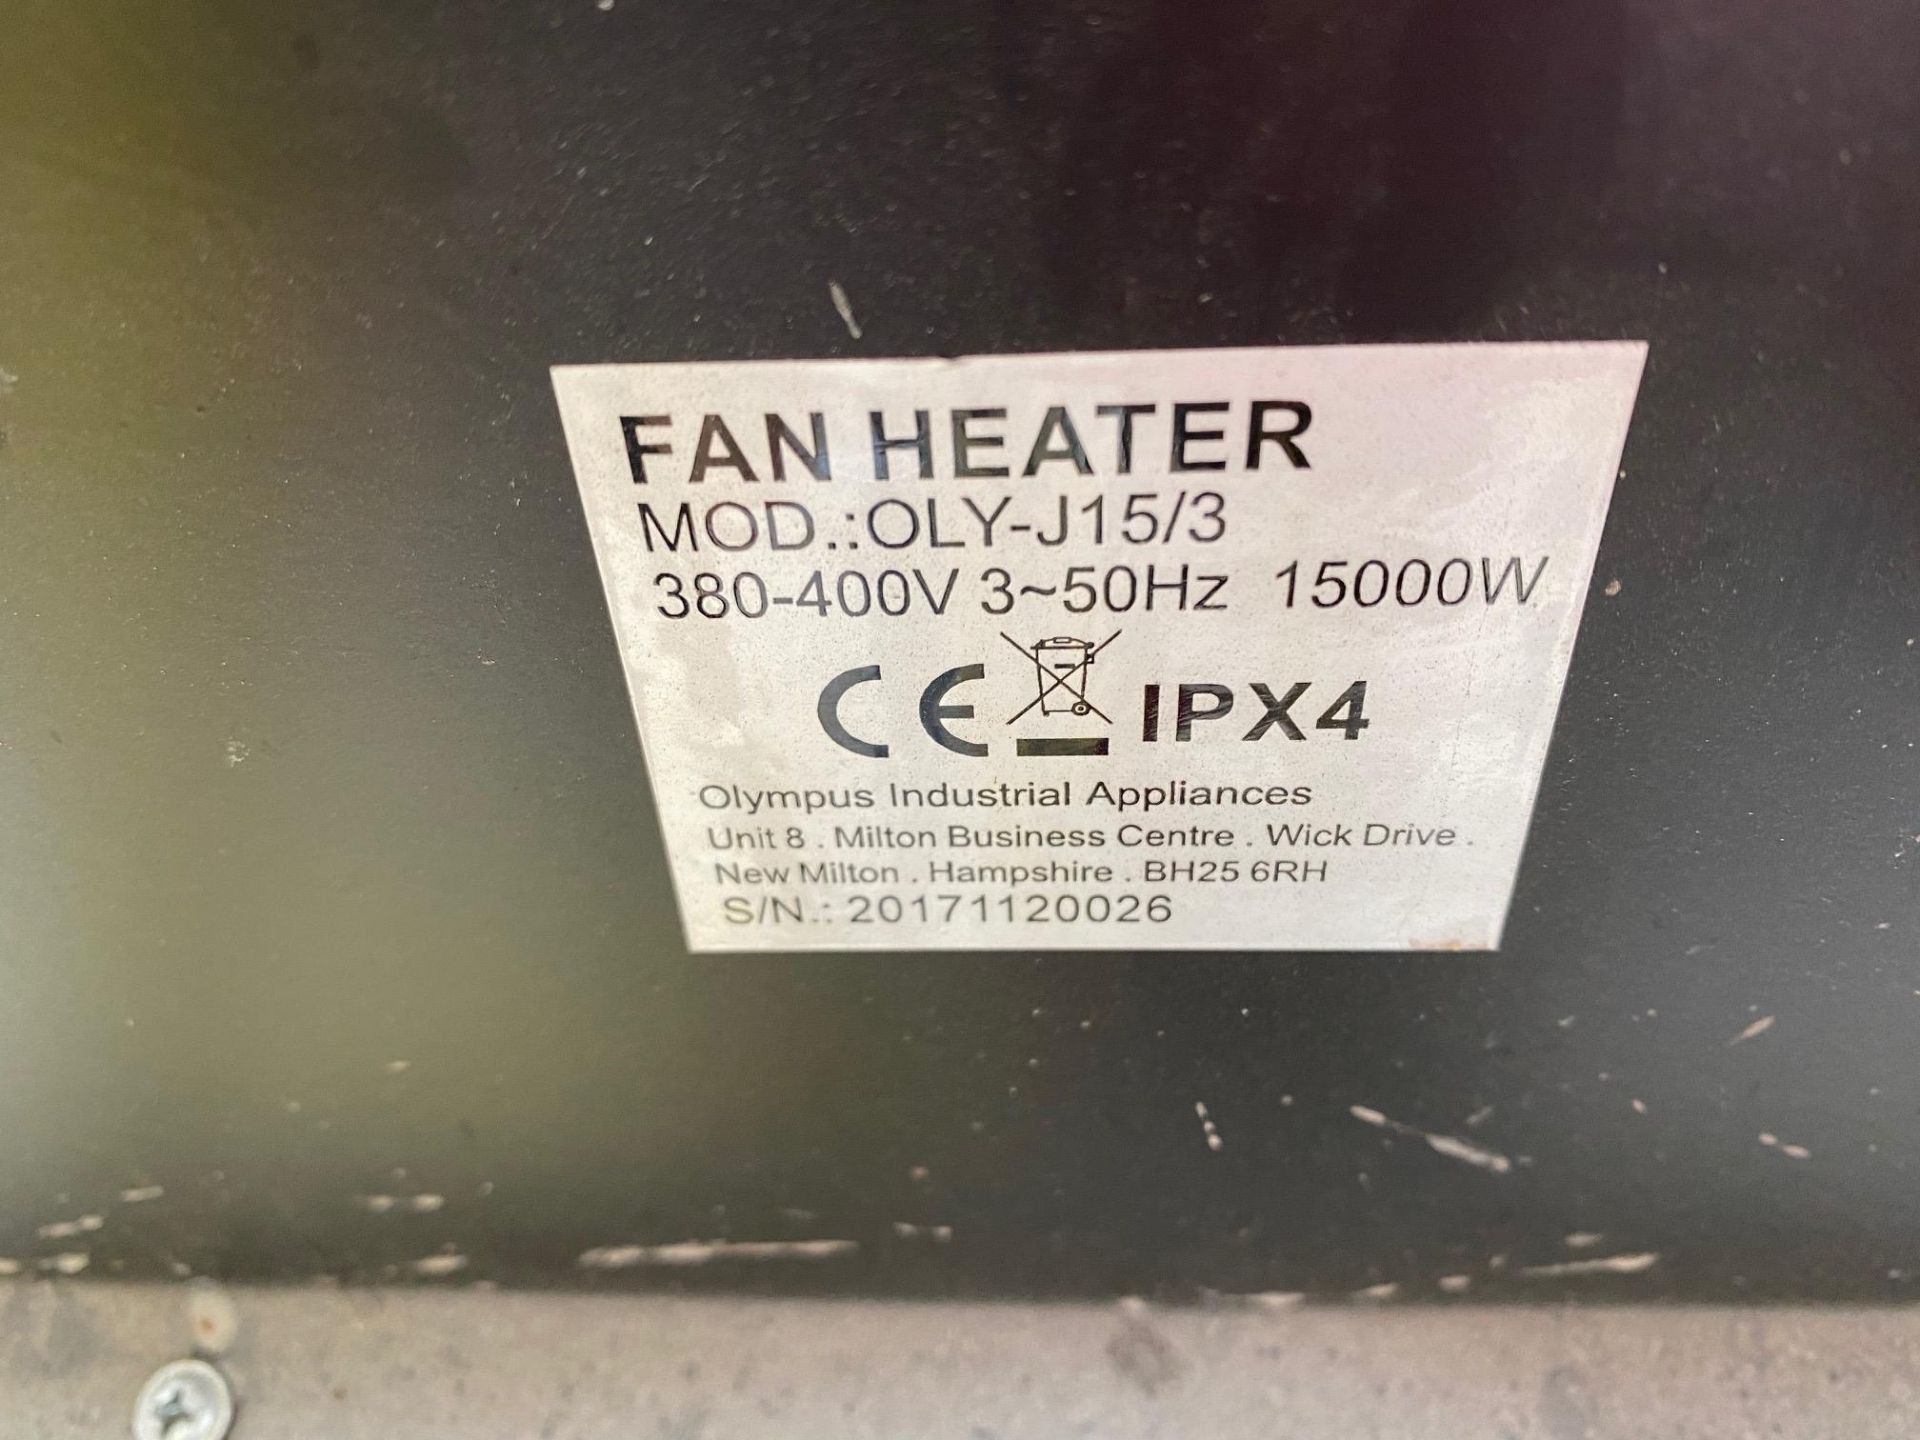 2x Jetheat, Model: OLYJ15/3 Fan Heater, 380-400v, 15000w, DOM: 2017 (Location of Lot East Marsh - Image 5 of 6